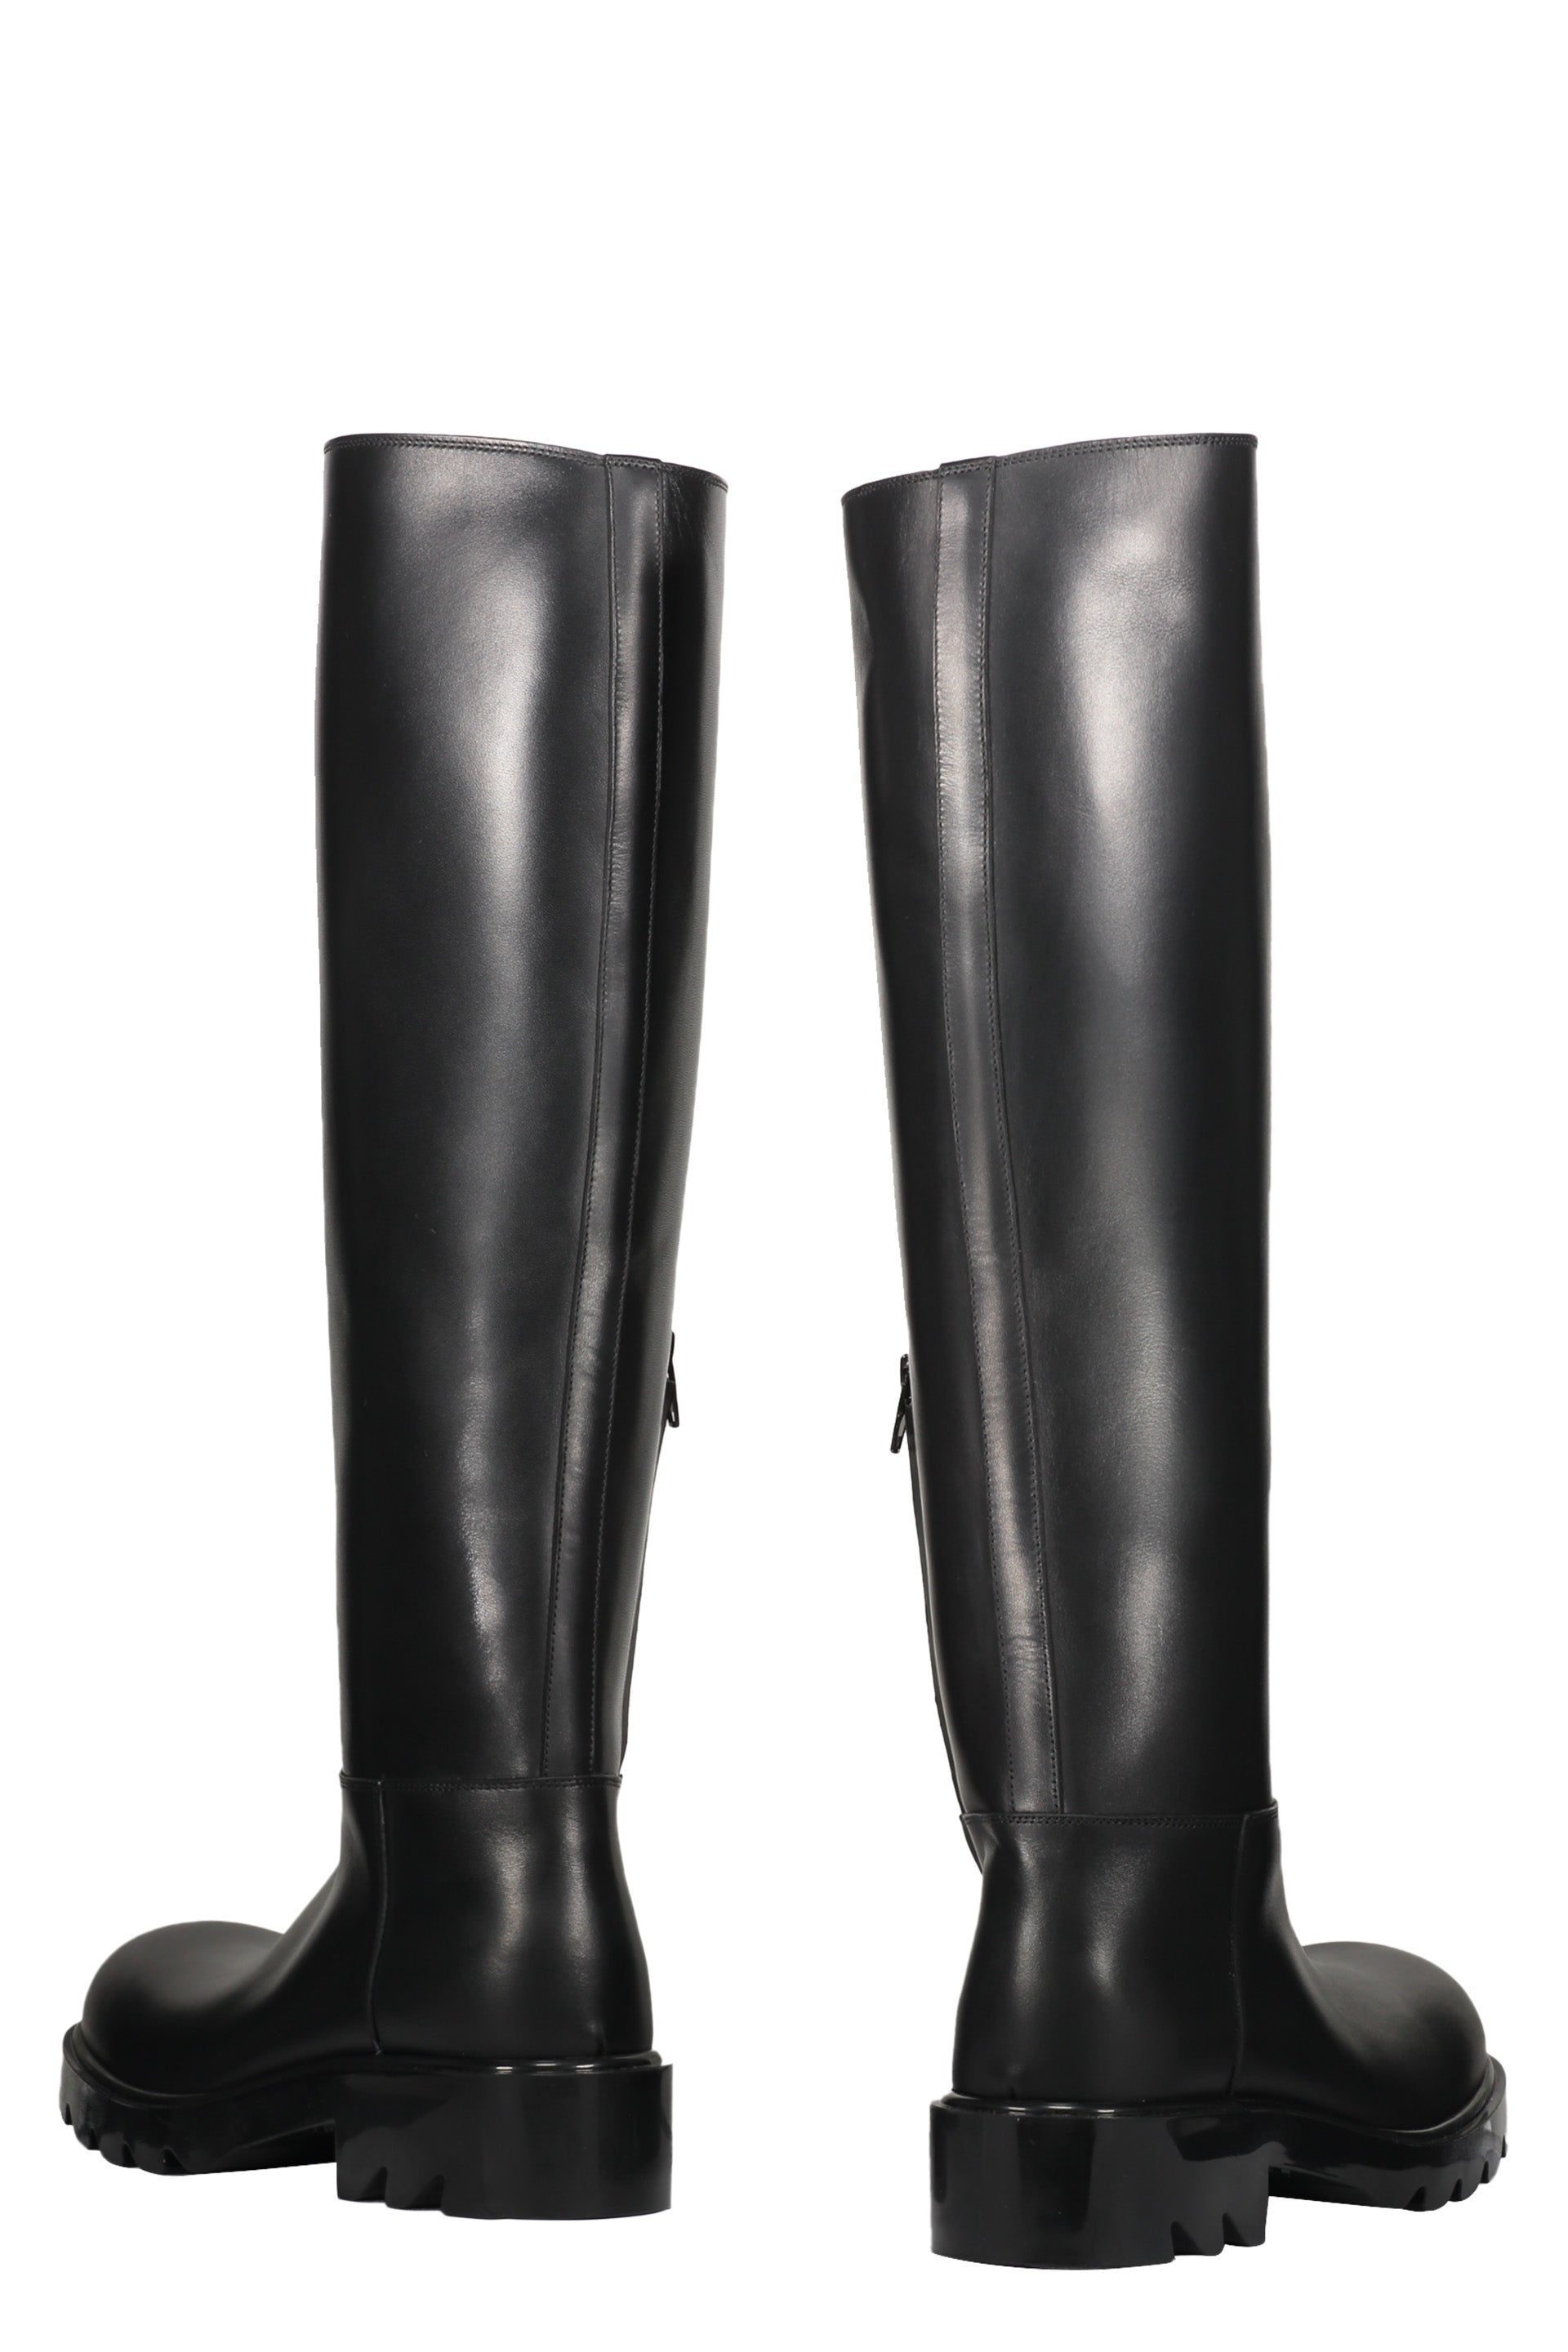 Strut leather boots-Bottega Veneta-OUTLET-SALE-35-ARCHIVIST